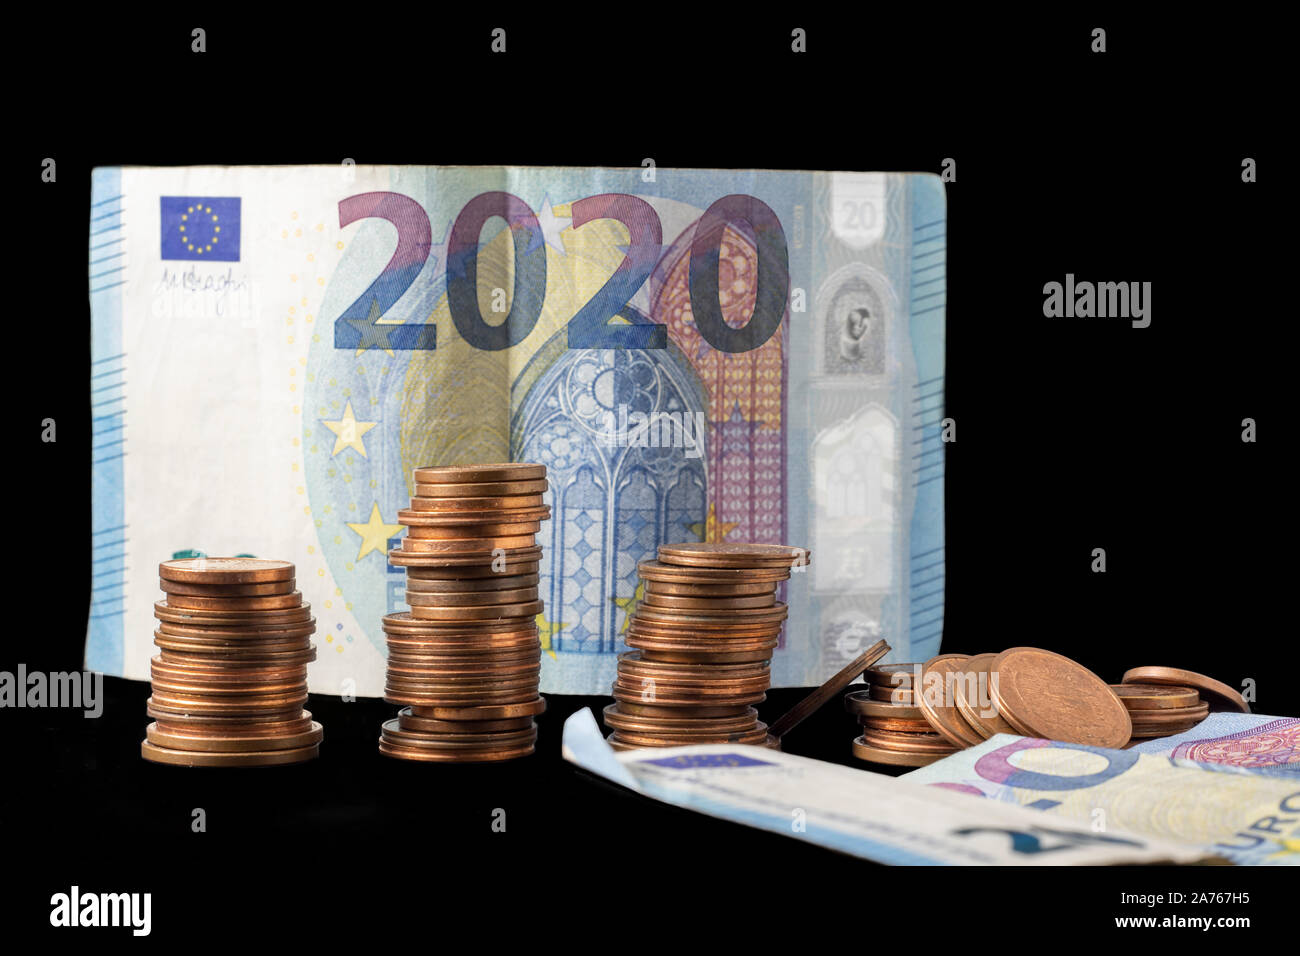 Nuovo anno fiscale 2020 rappresentata con le fatture in euro e la moneta di pile isolate su nero. Immagine concettuale della situazione economica e possibili imminenti Foto Stock